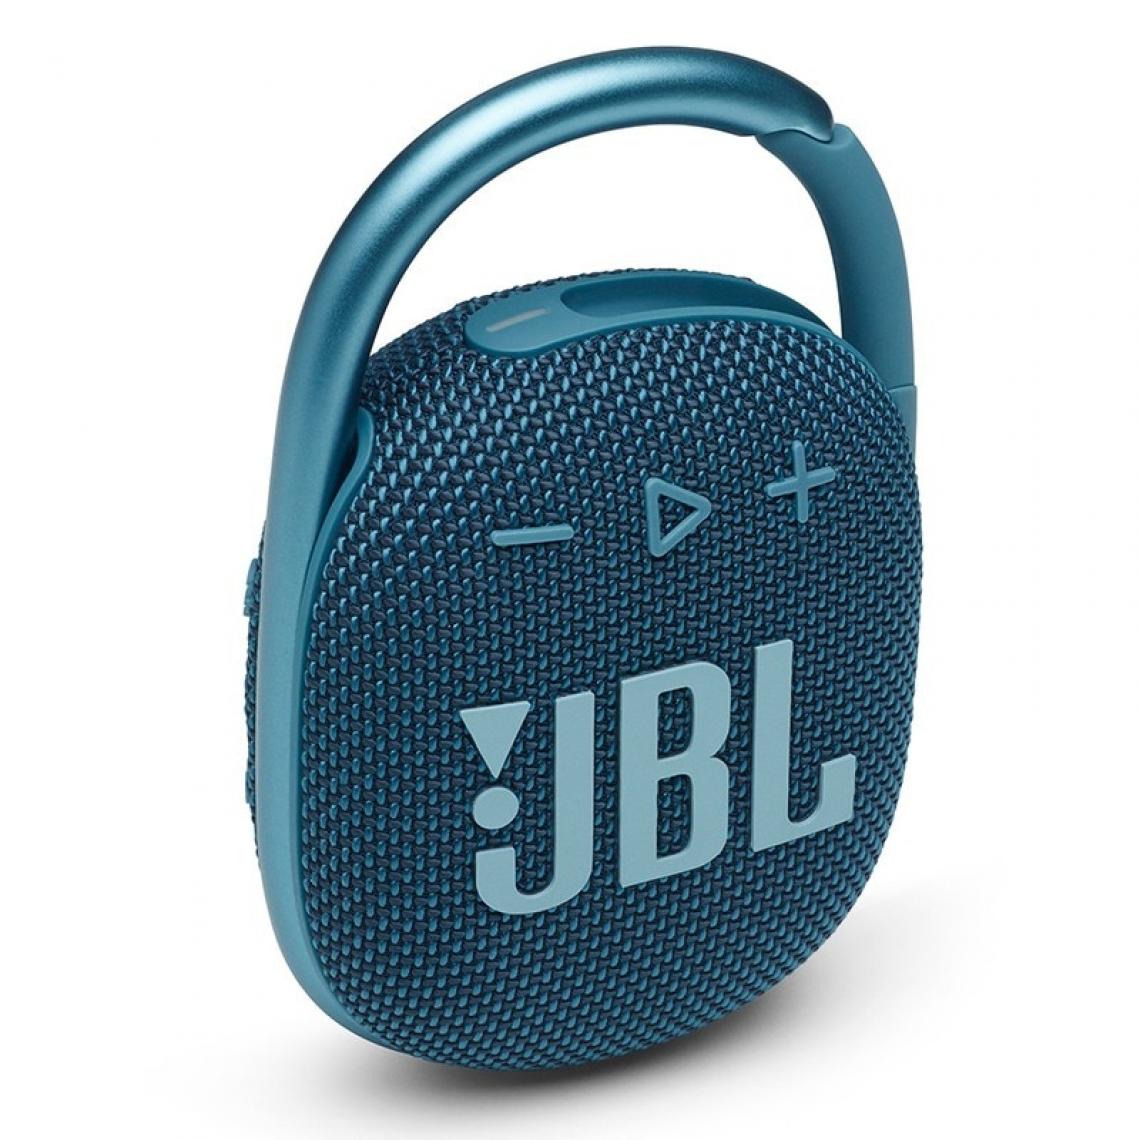 Universal - Haut-parleur portable Bluetooth subwoofer haut-parleur extérieur mini haut-parleur IP67 étanche à la poussière et à l'eau - Hauts-parleurs